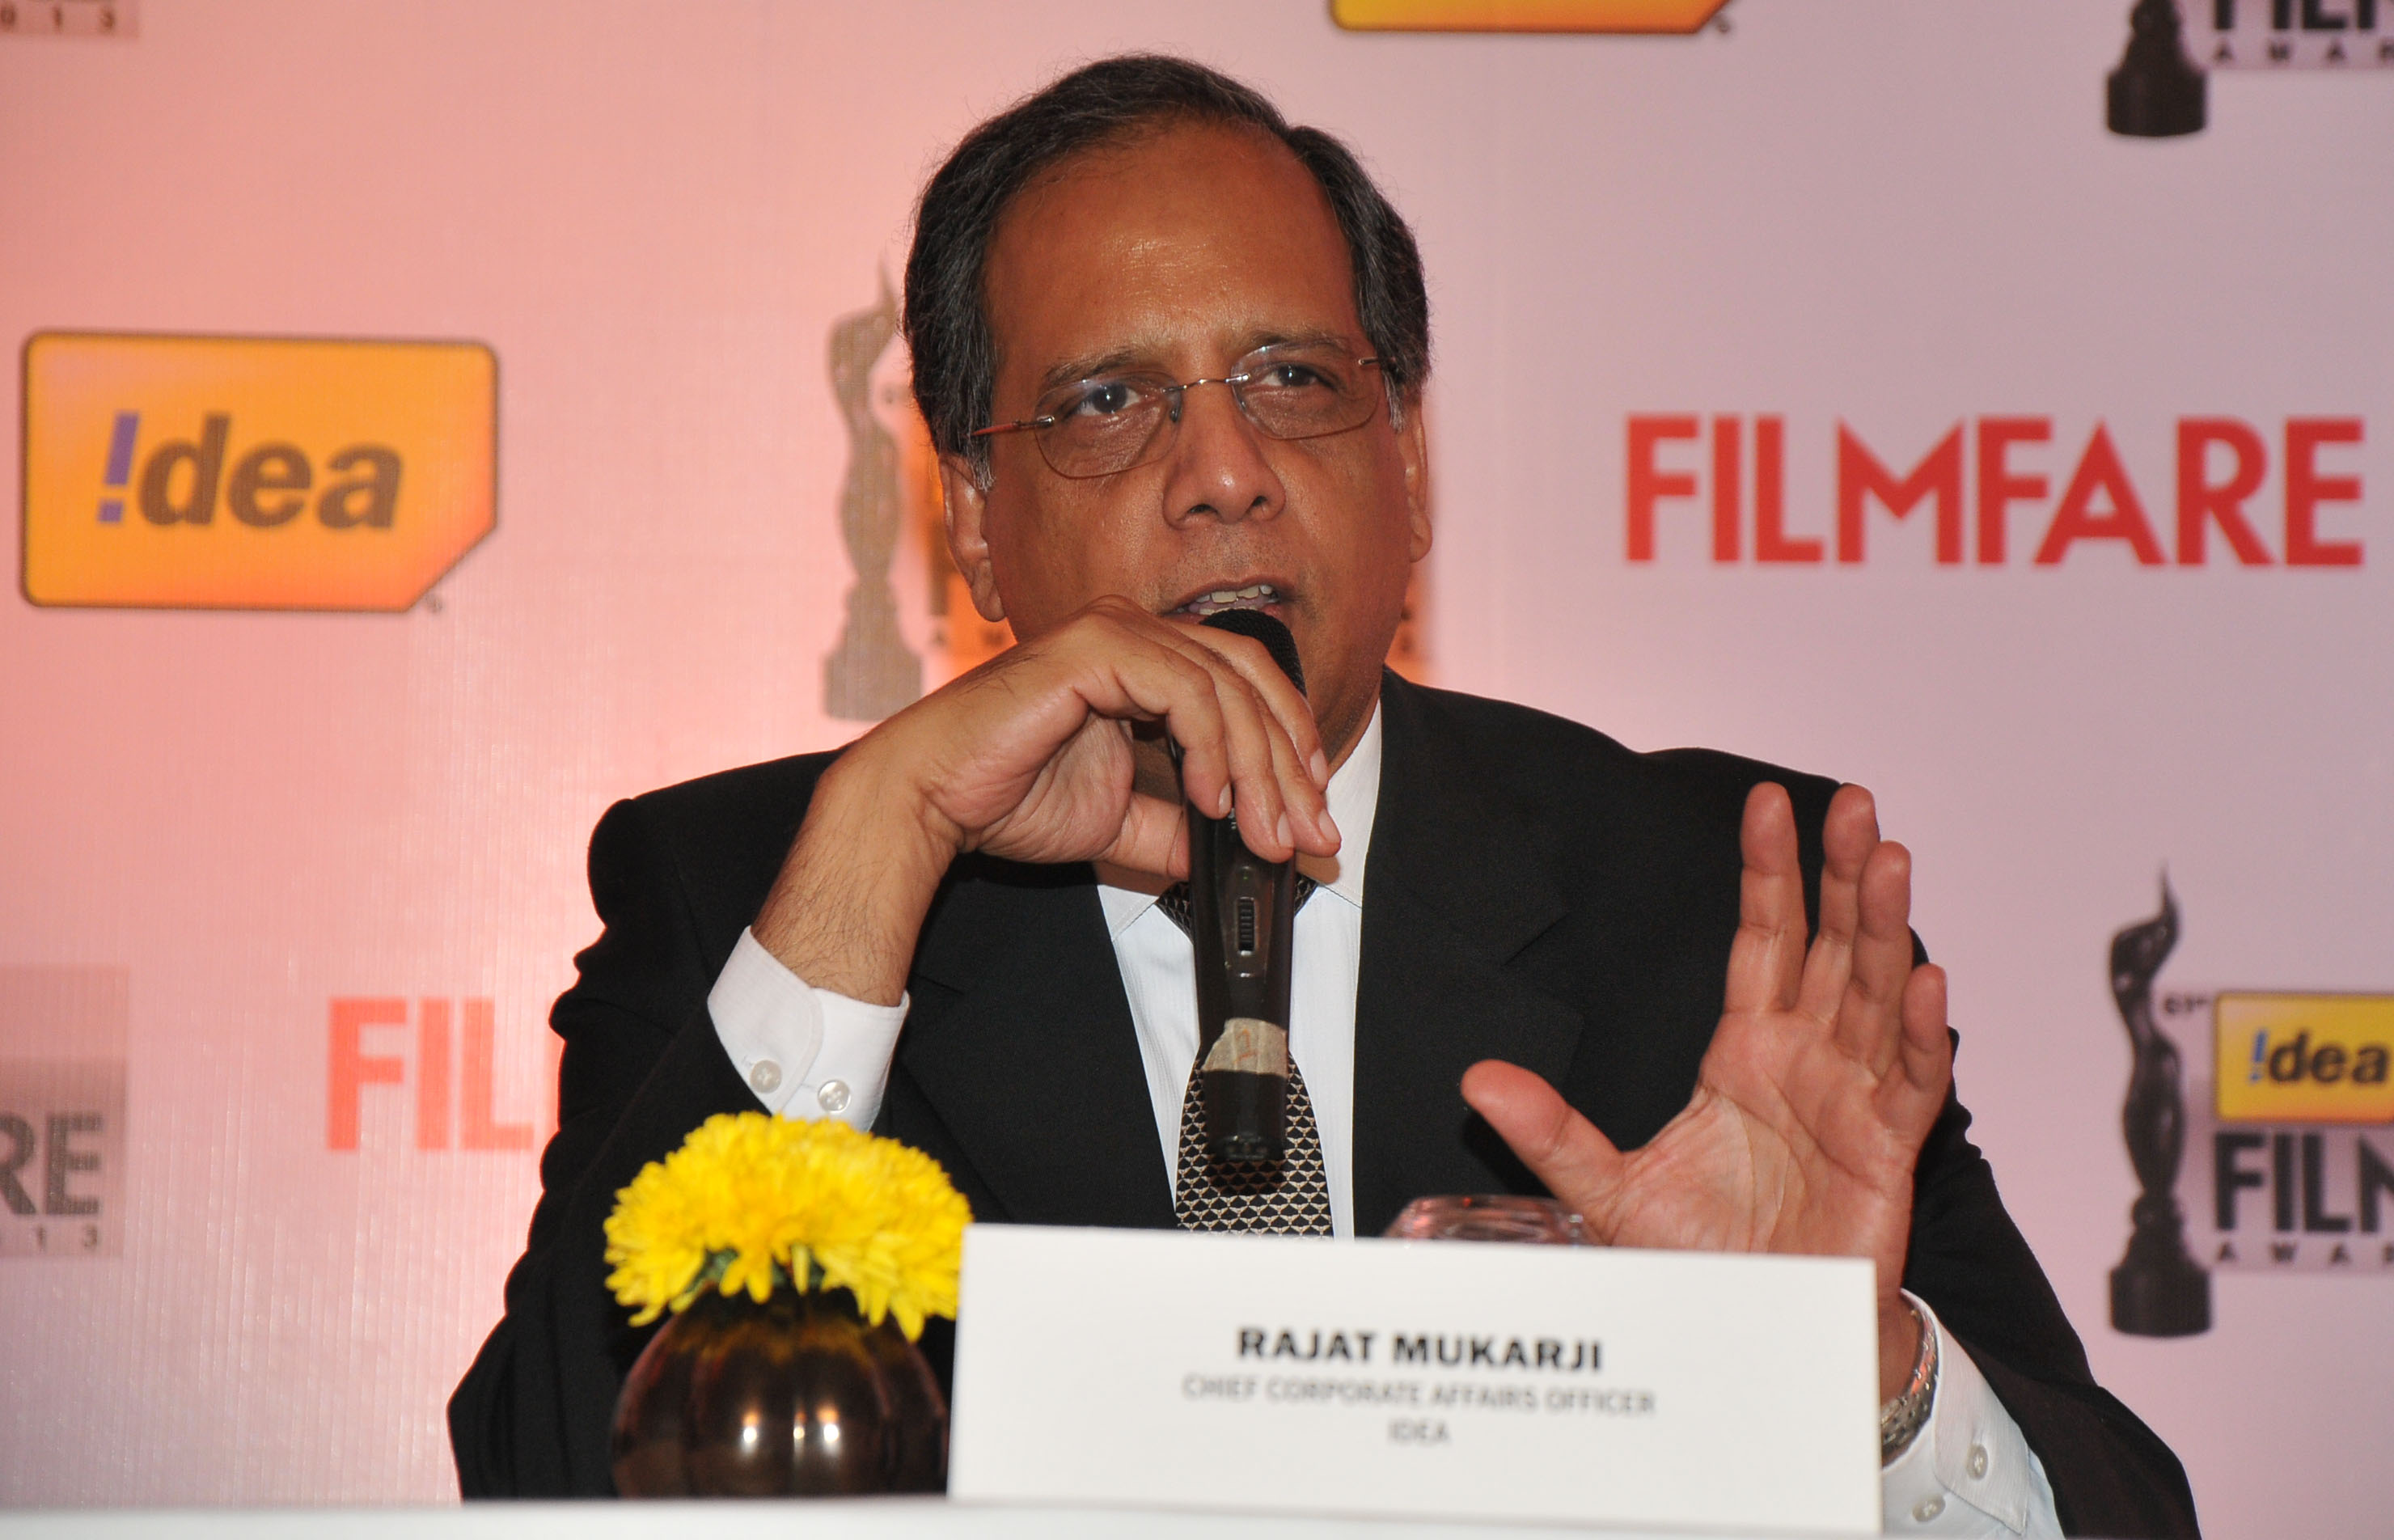 Mr. Rajat Mukarji (CCAO, Idea Cellular) at the '61st Idea Filmfare Awards 2013' Press Conference at Park Hyatt Hotel, Chennai.1